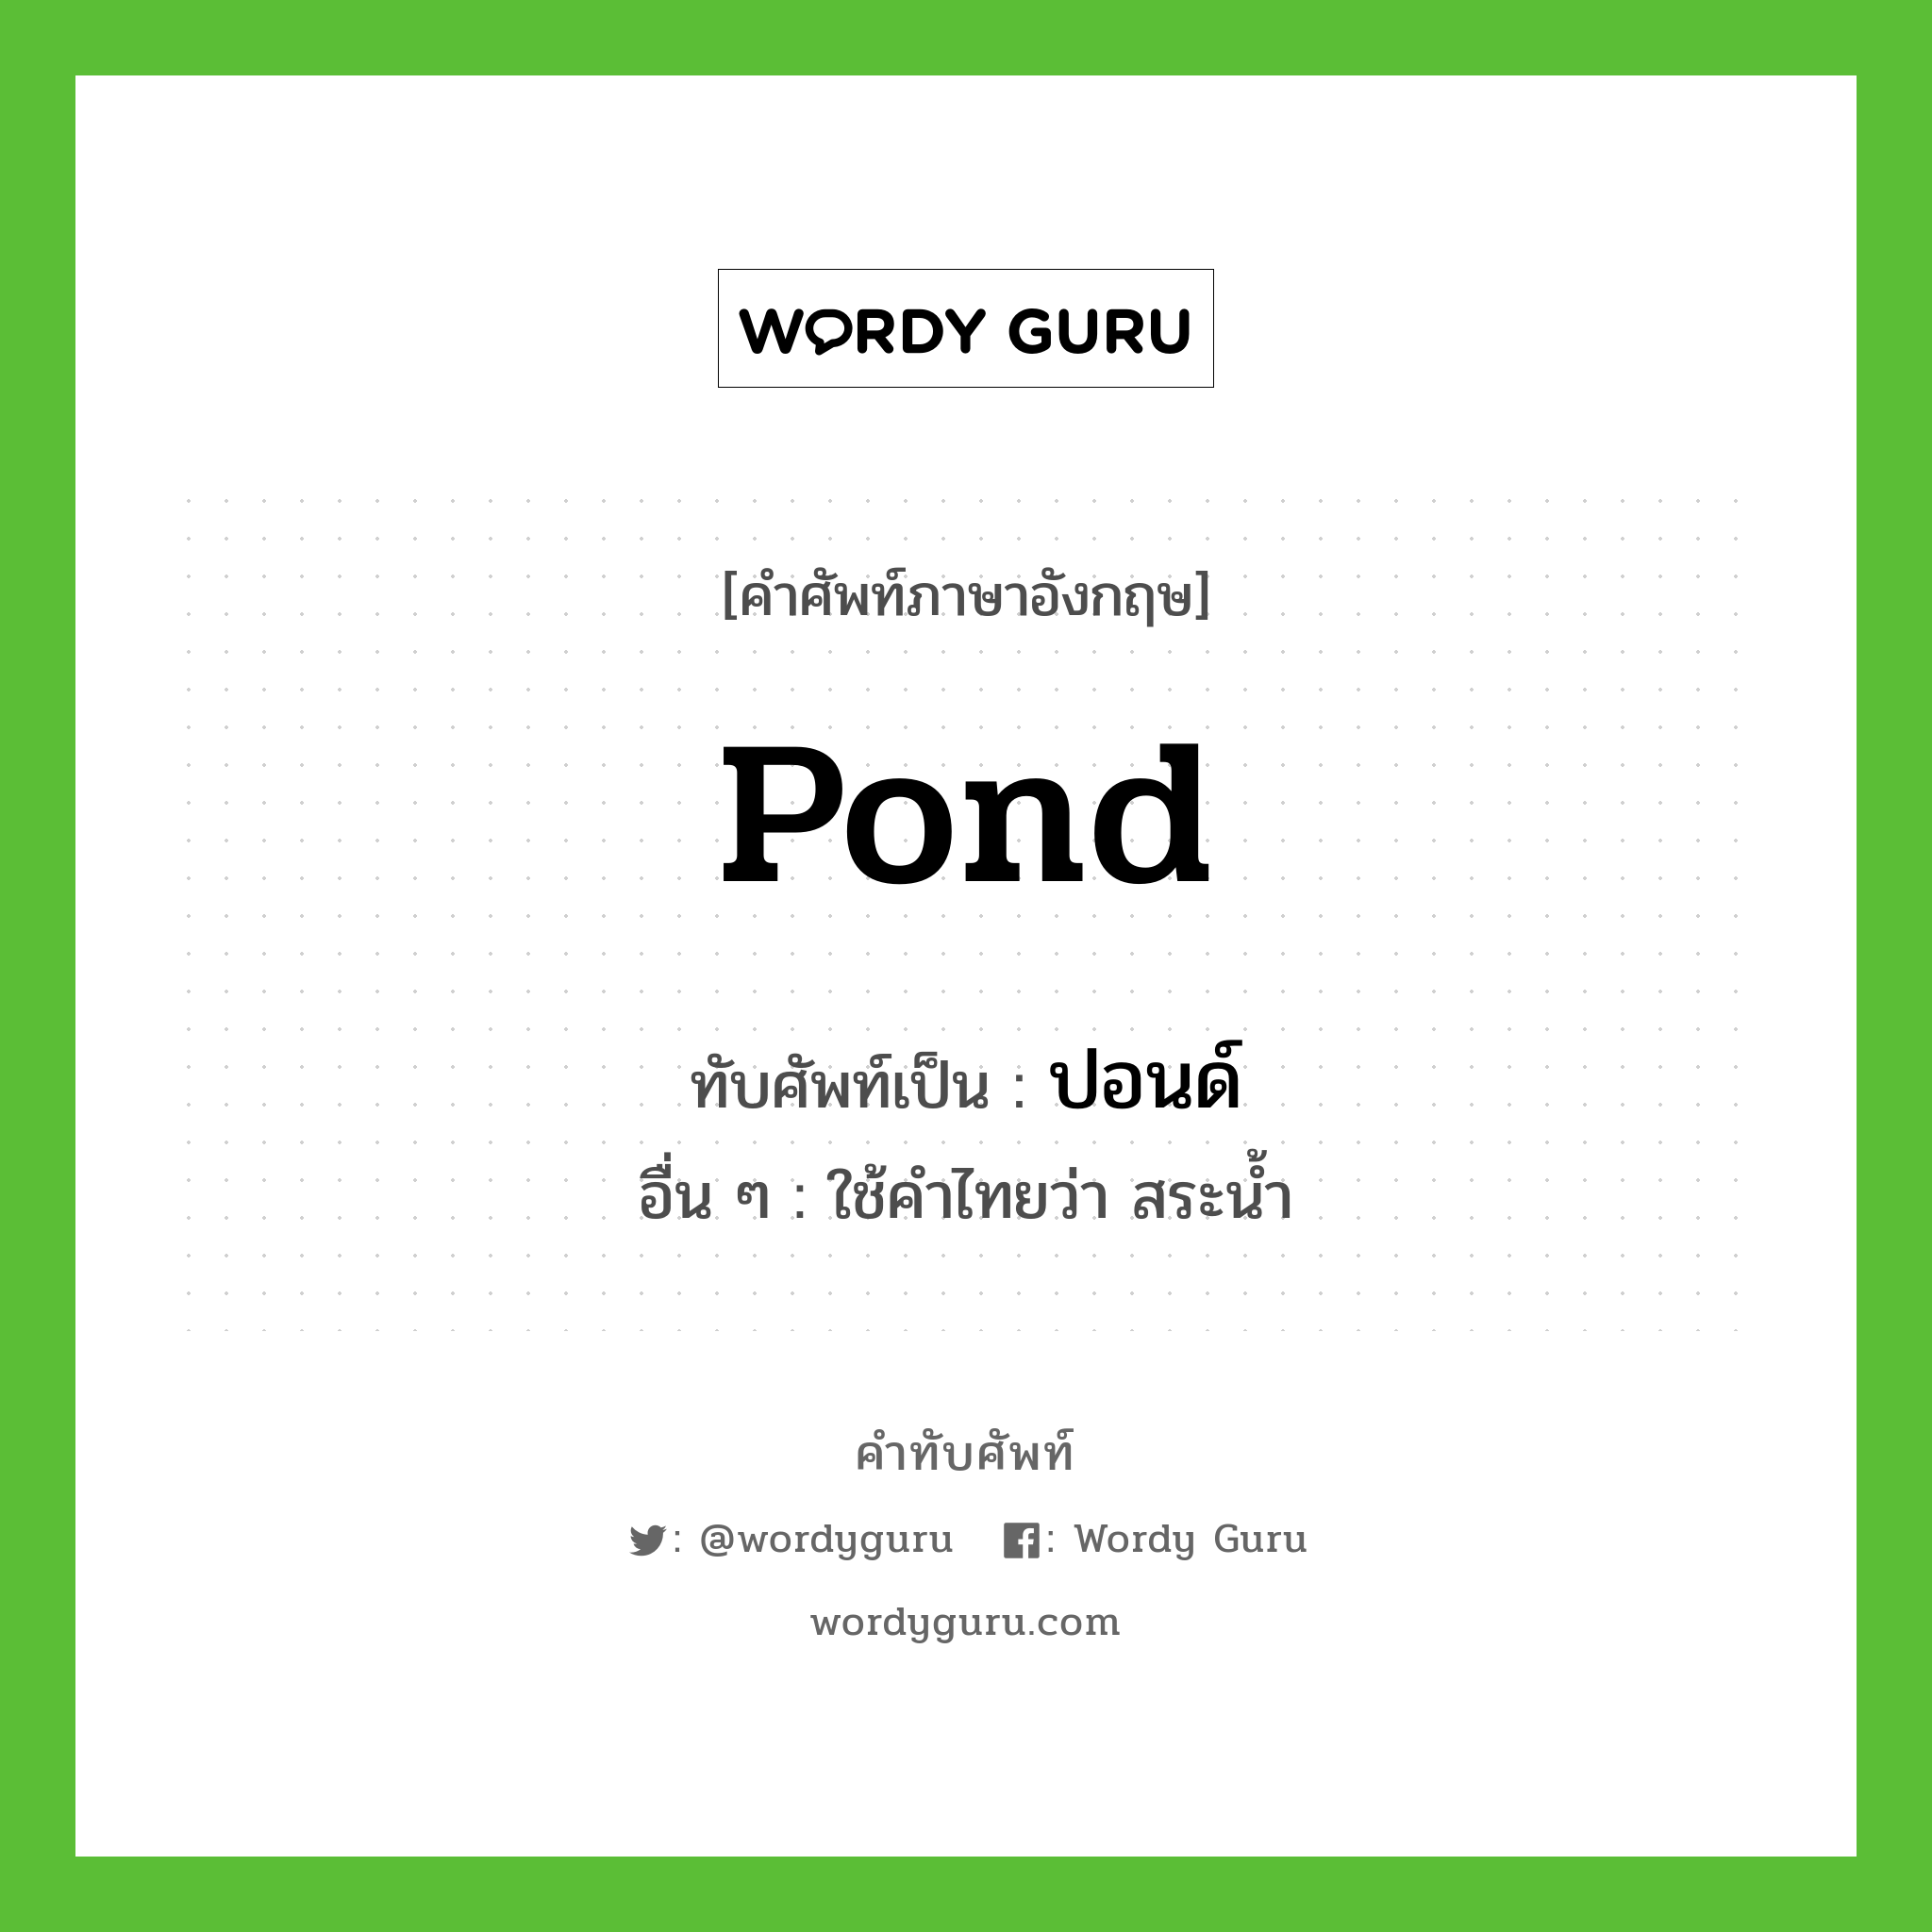 ปอนด์ เขียนอย่างไร?, คำศัพท์ภาษาอังกฤษ ปอนด์ ทับศัพท์เป็น pond อื่น ๆ ใช้คำไทยว่า สระน้ำ